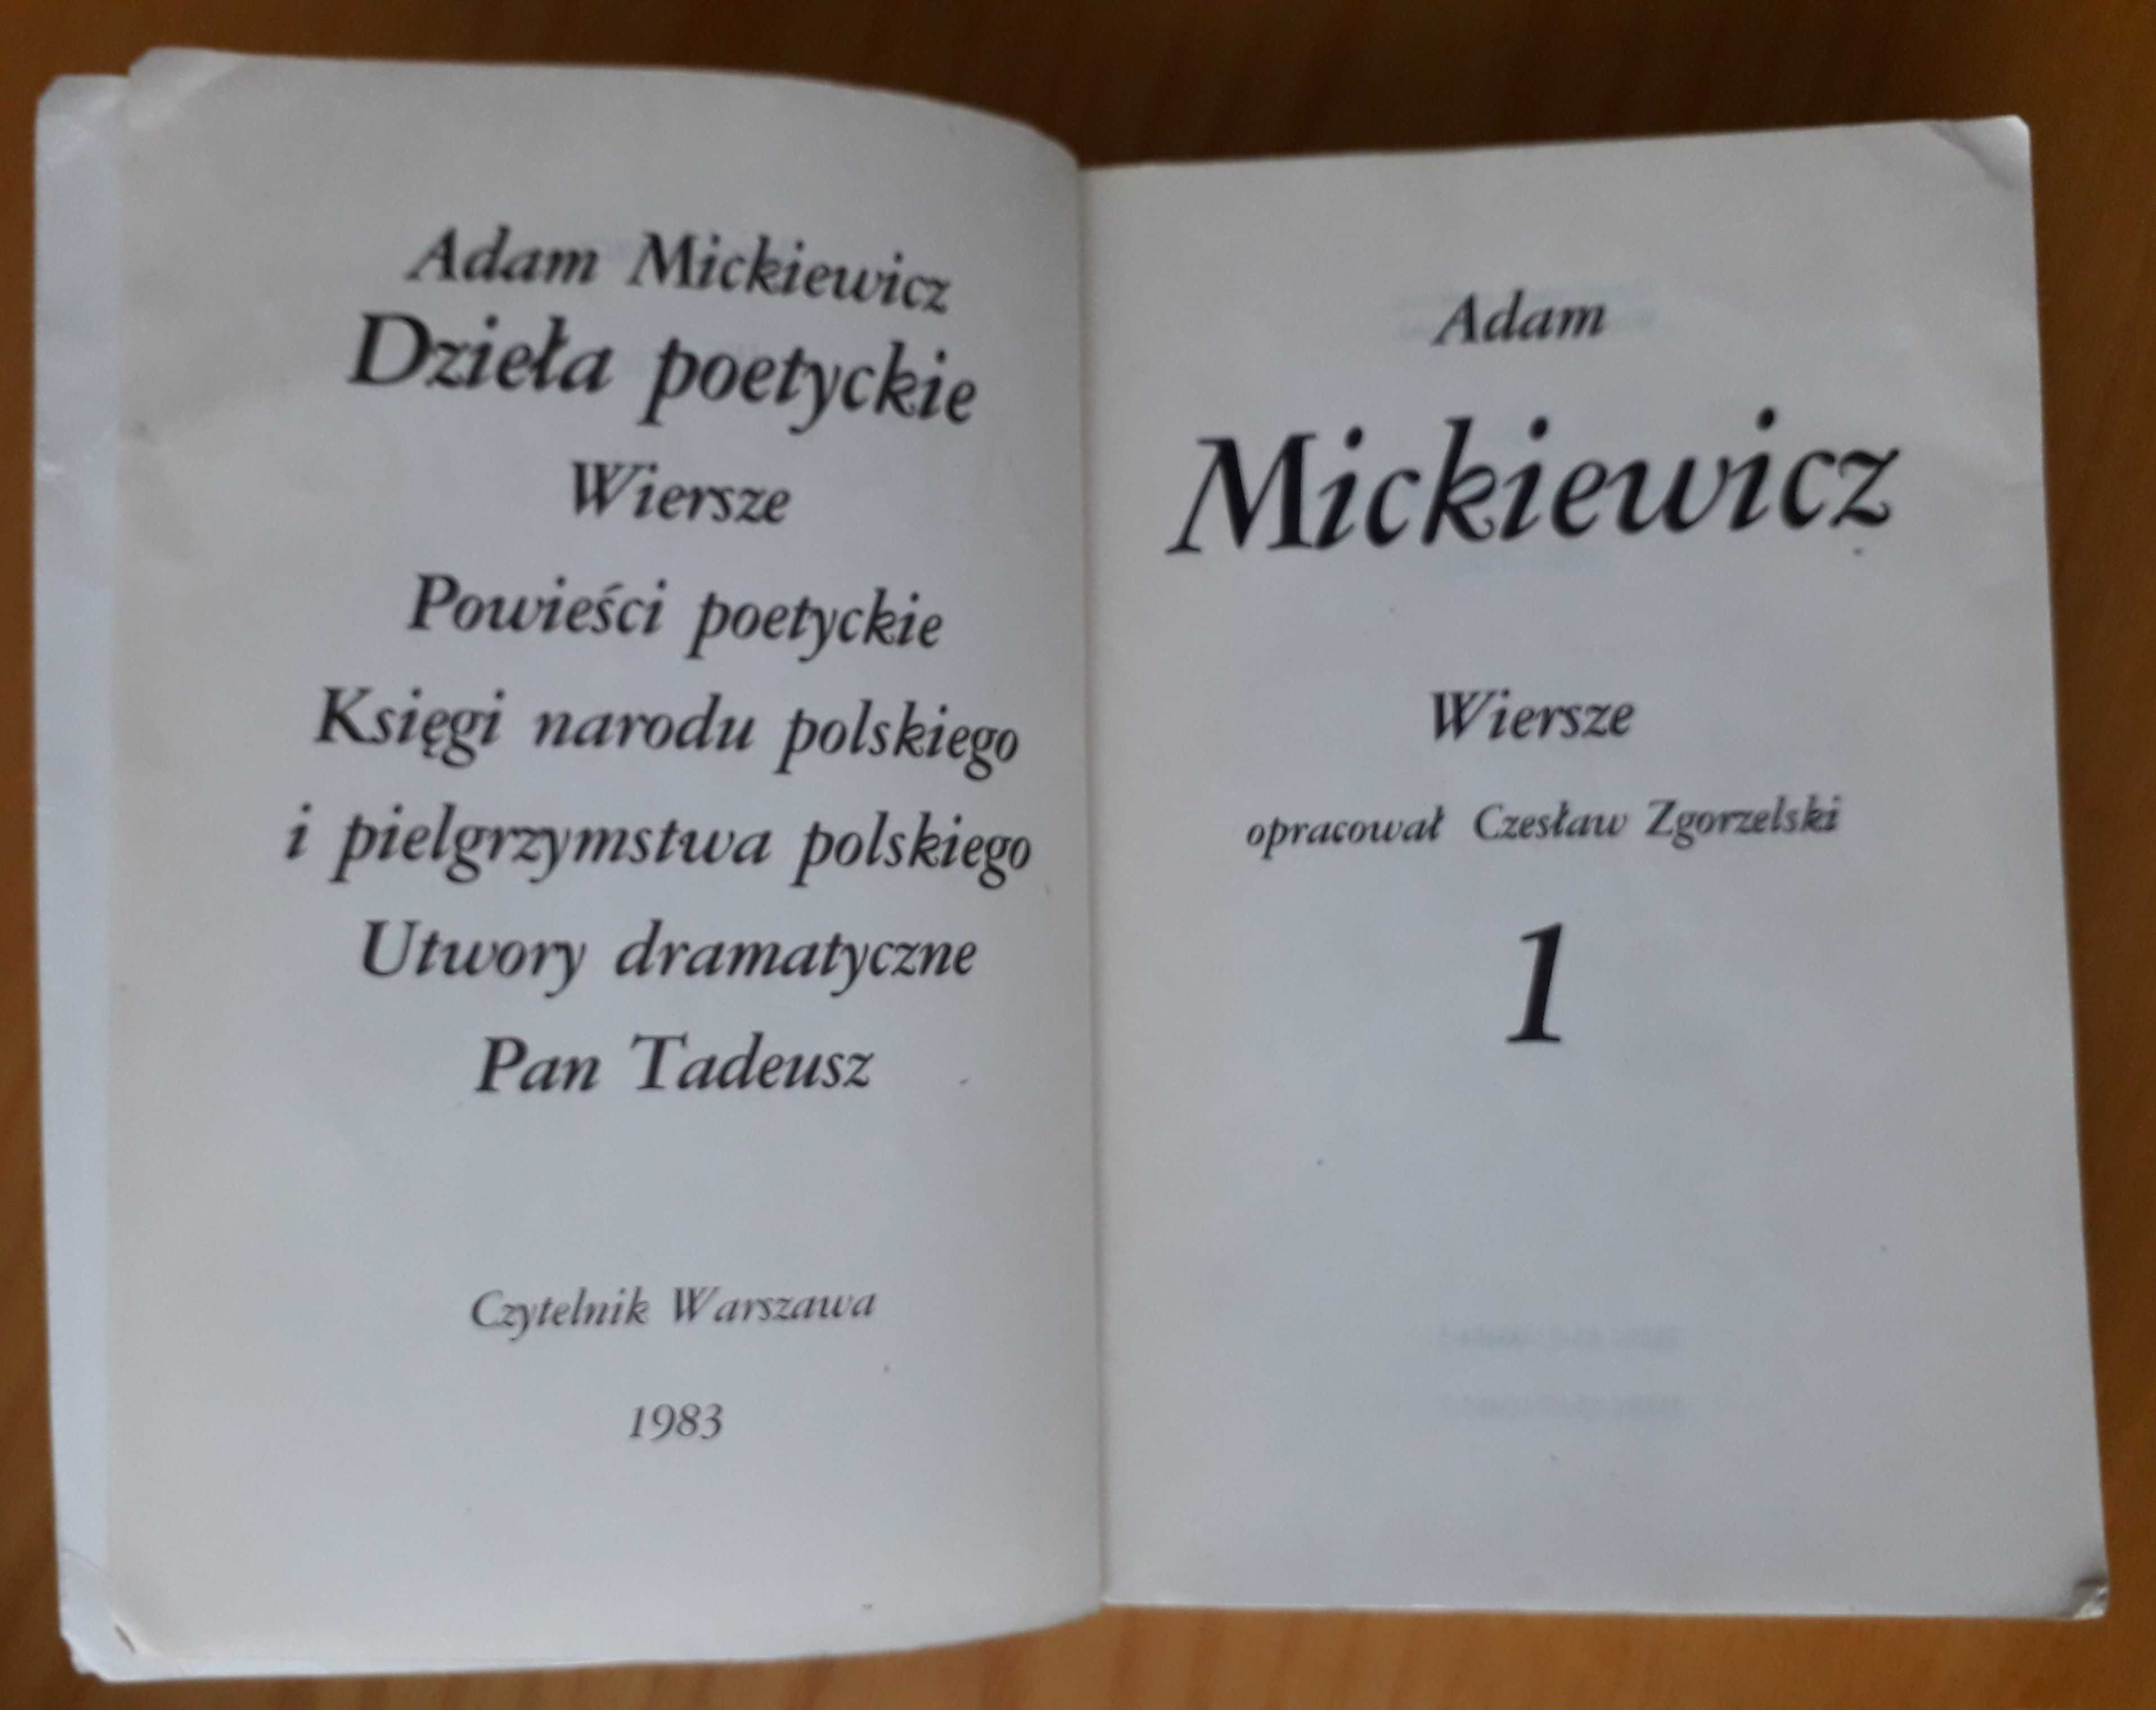 ADAM MICKIEWICZ Wiersze Powieści poetyckie Utwory dramat.  Pan Tadeusz